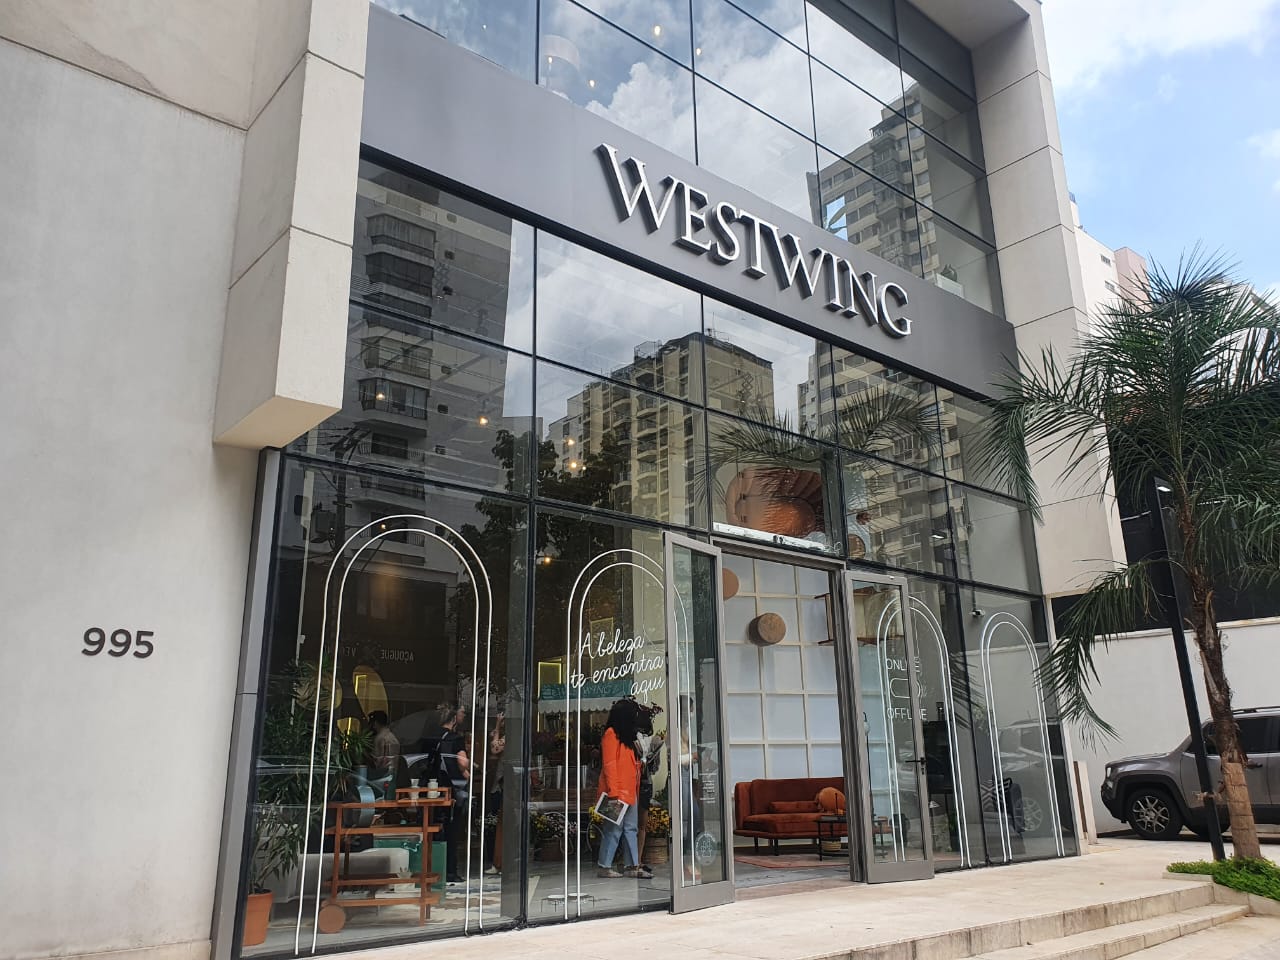 Westwing Belo Horizonte Store